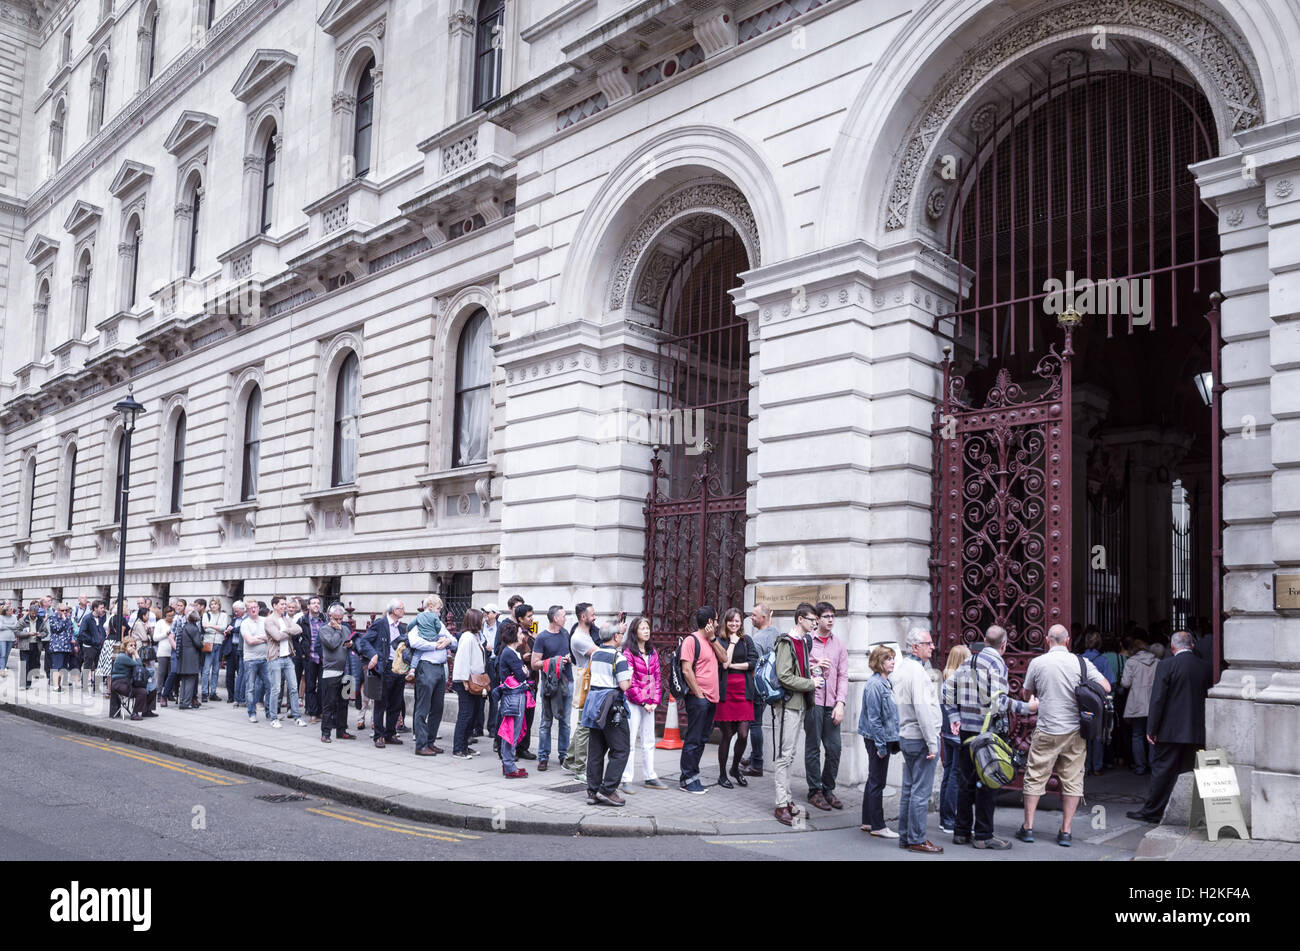 En dehors de la file d'FCO (ministère des Affaires étrangères et du Commonwealth), le Roi Charles Street, Londres, Angleterre, le week-end des portes ouvertes. Banque D'Images